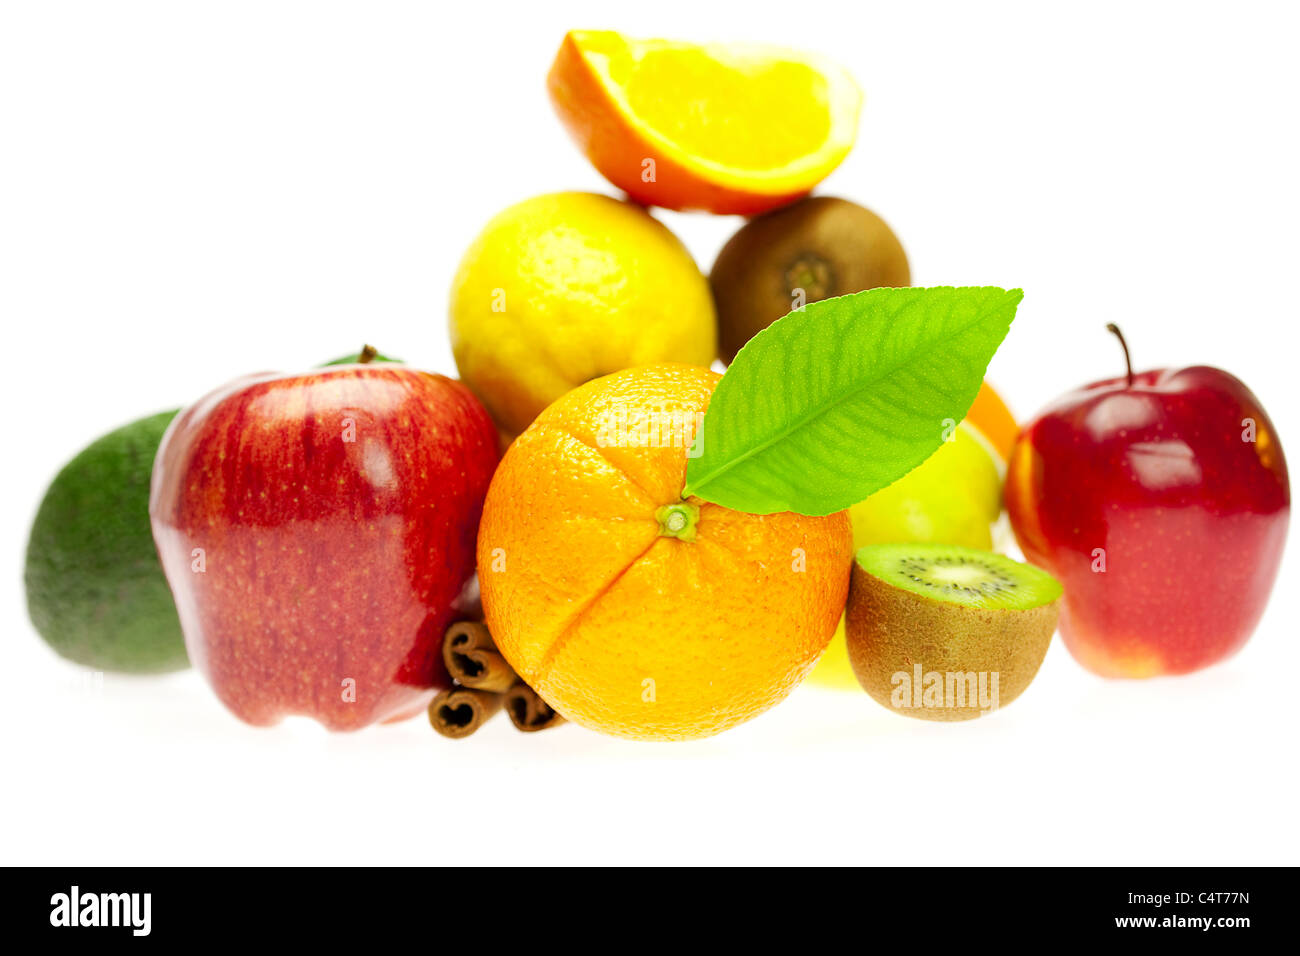 Kiwi, avocat, pomme, orange, citron et cannelle, isolated on white Banque D'Images